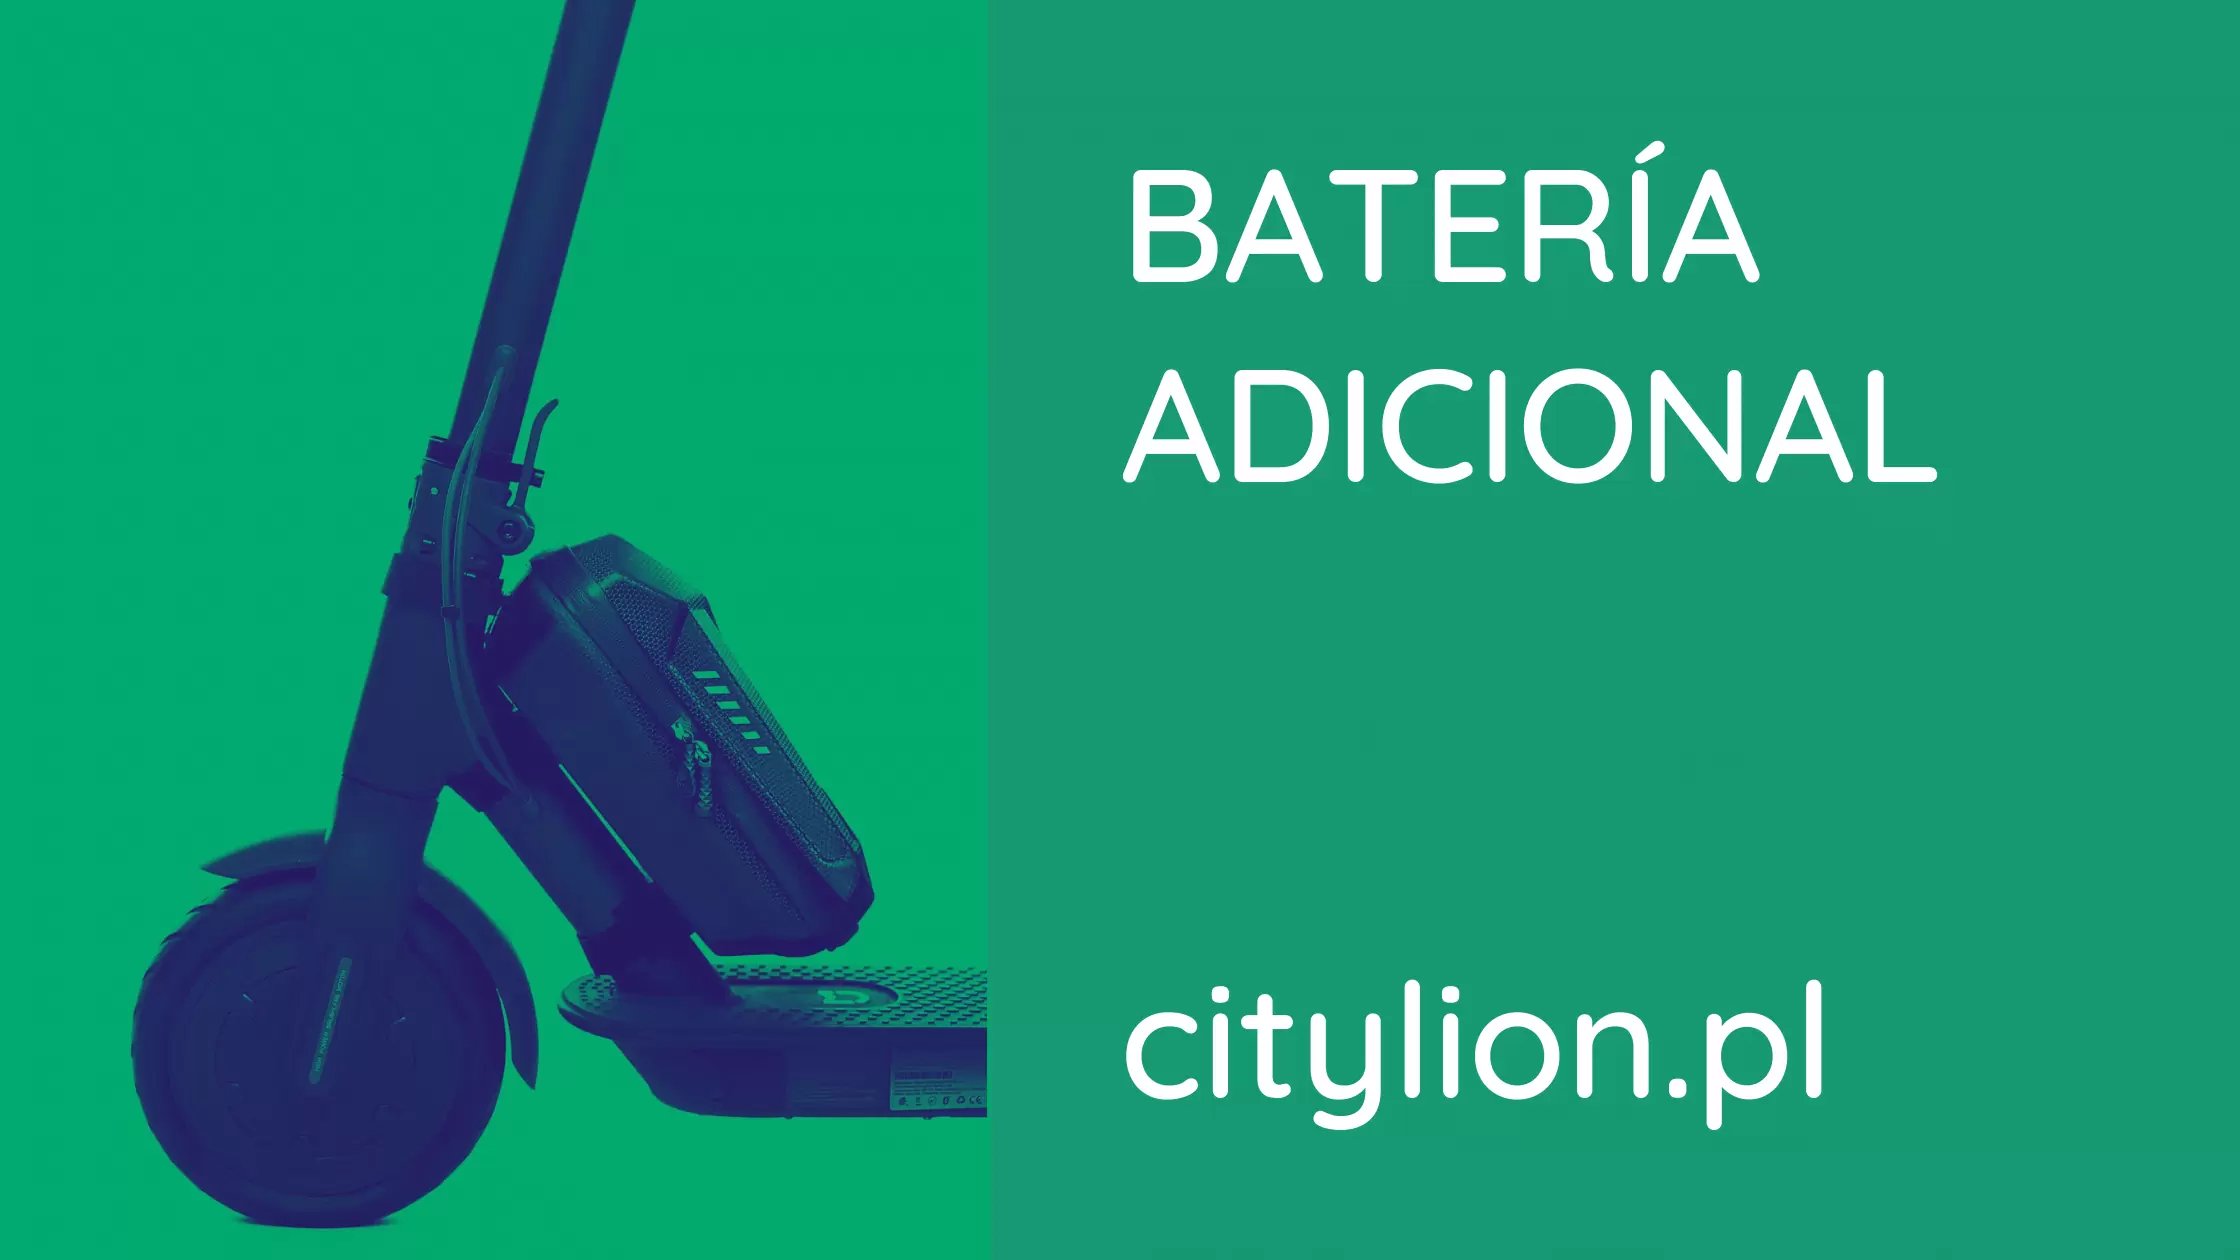 ¿Cómo funciona la batería adicional para scooters eléctricos?